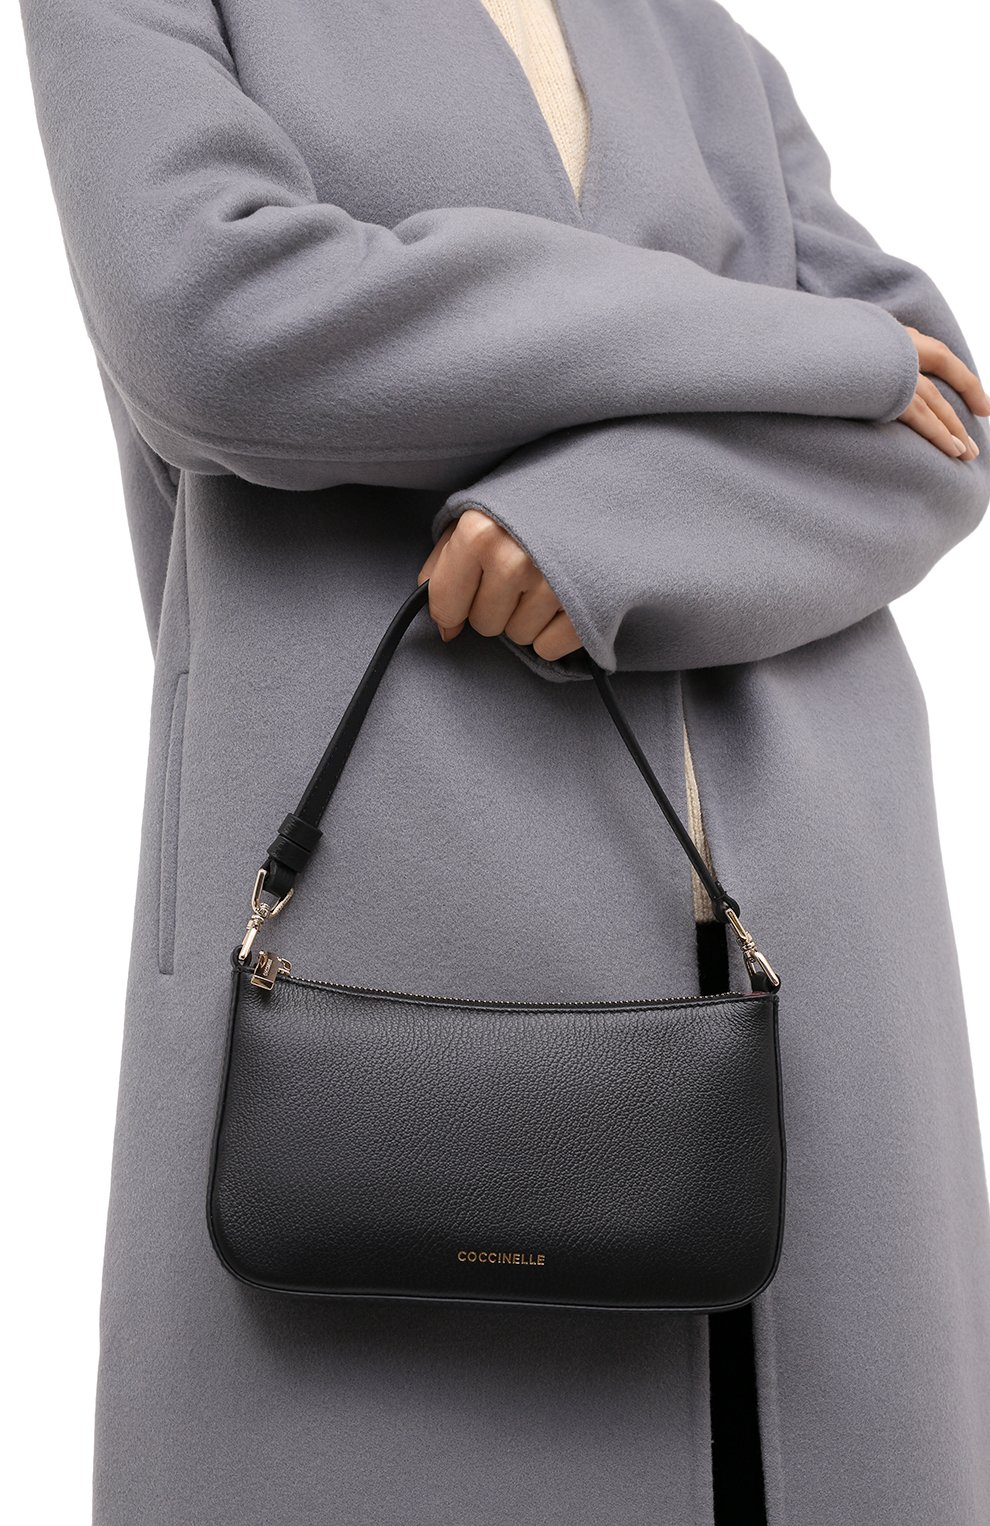 Женская черная сумка bonheur mini COCCINELLE купить в интернет-магазине ЦУМ, арт. E5 IV3 55 P8 38